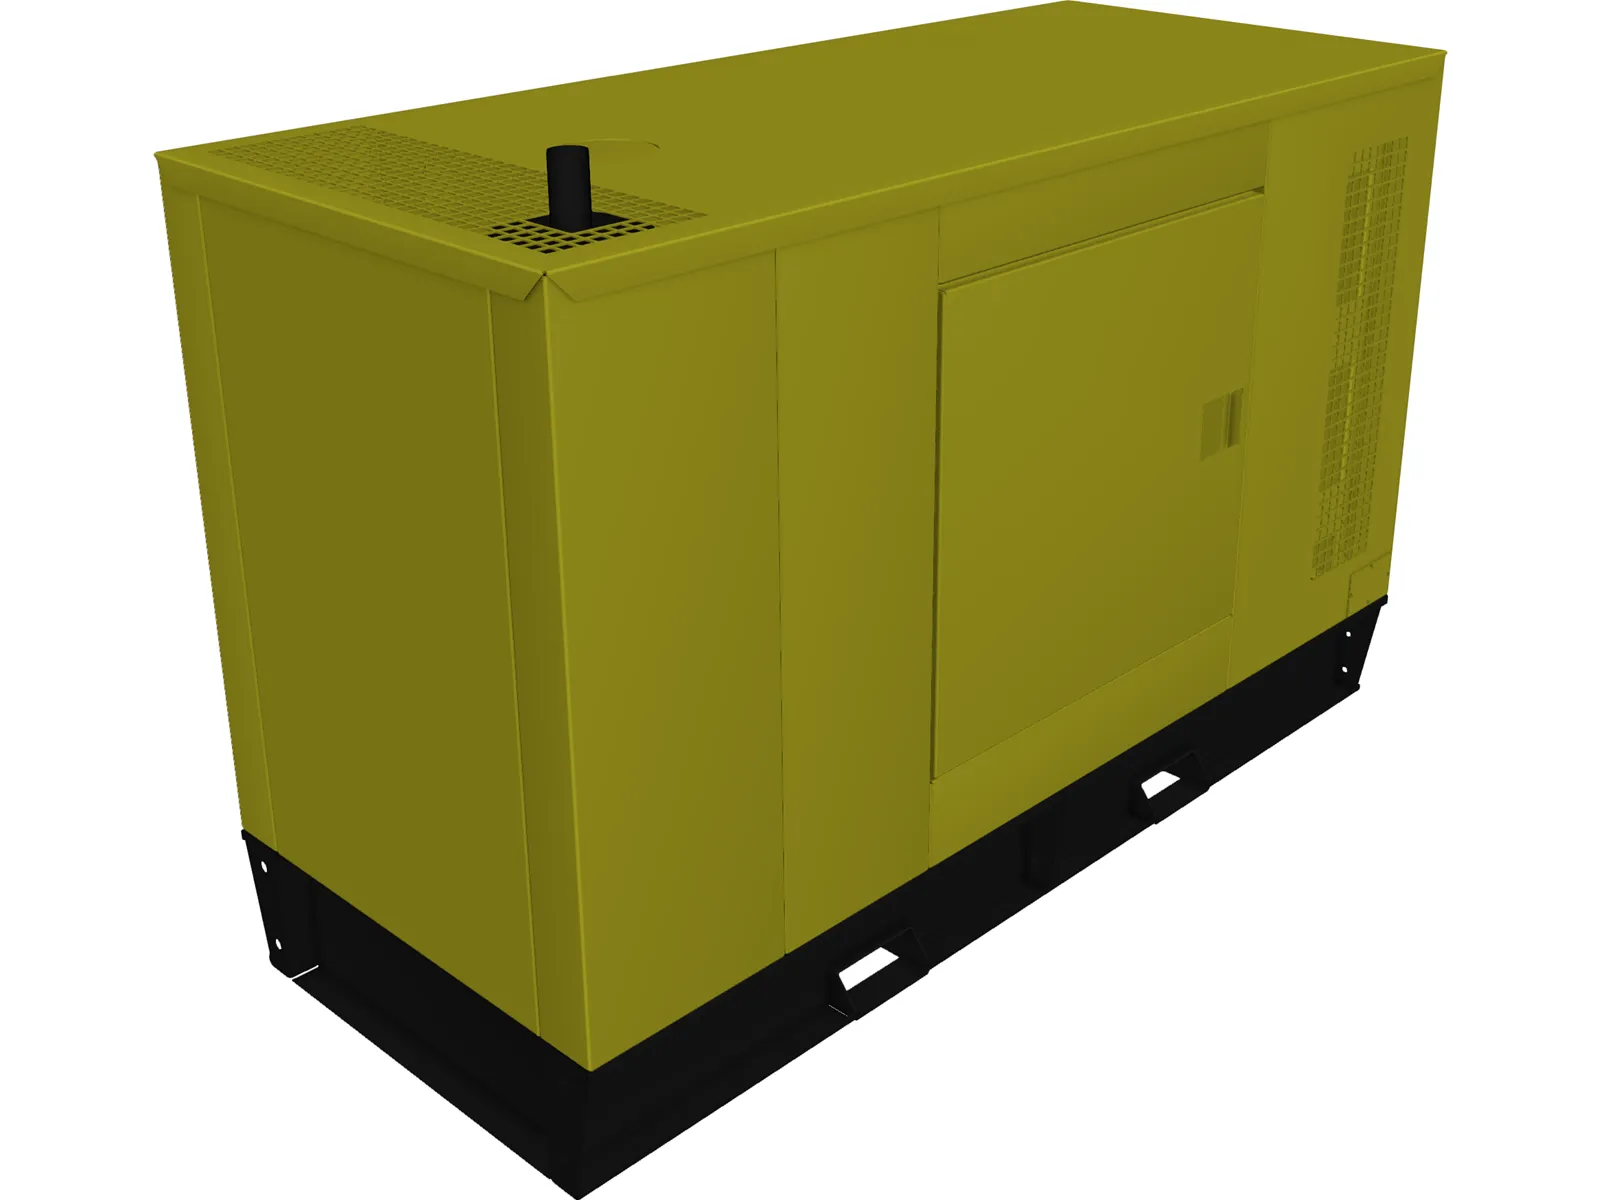 Diesel Generator Type A 3D Model